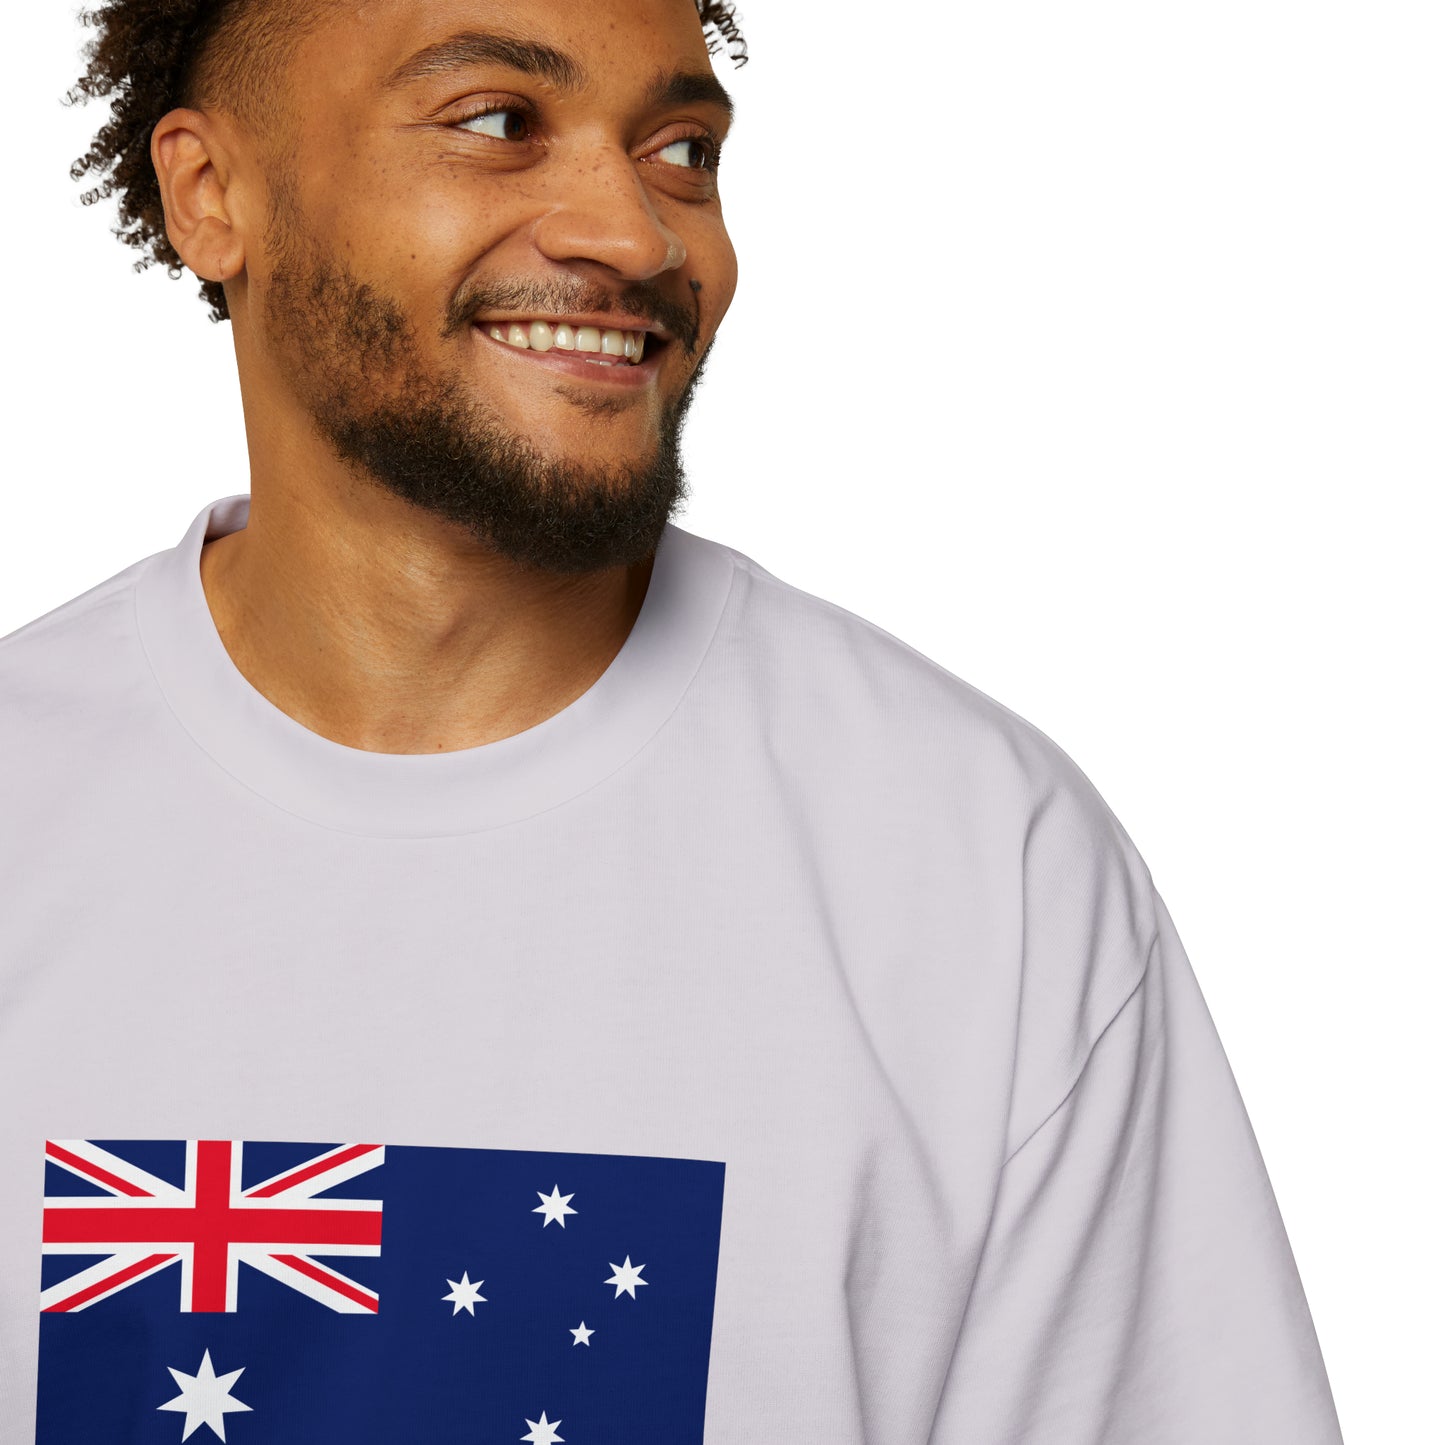 Australian Flag, Men's Heavy Oversized Tee